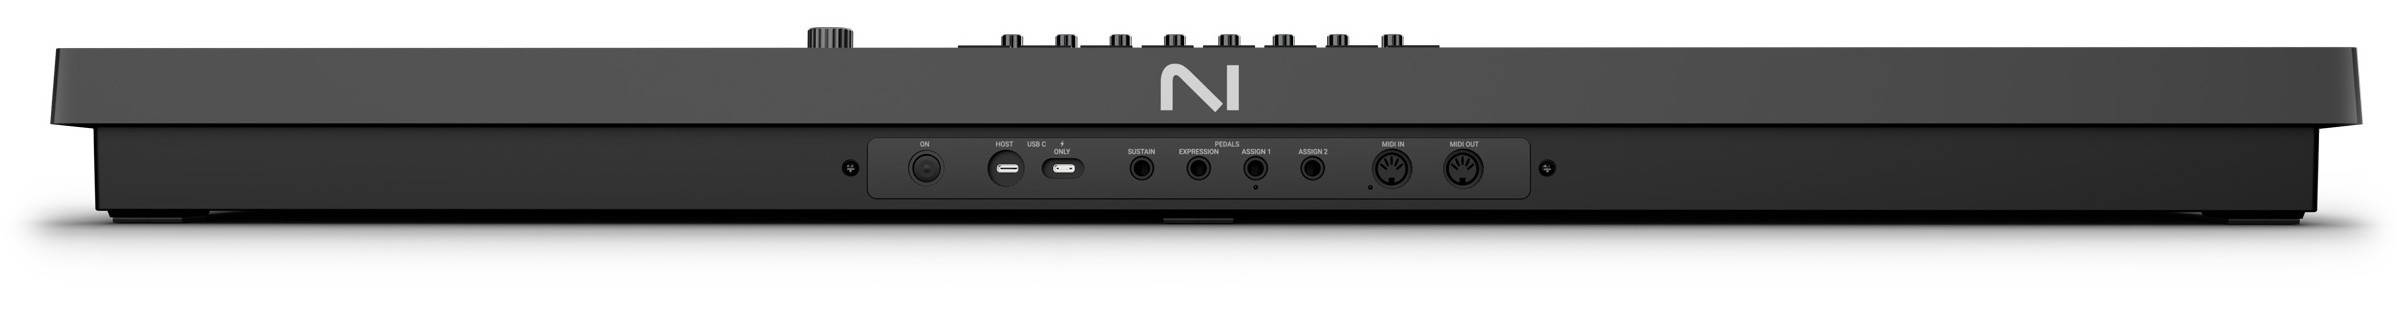 Komplete Kontrol S61 MK3 ofrece una variedad de opciones de conectividad, incluyendo USB, MIDI, alimentación por bus USB-C y entradas para pedal de sustain, expresión y dos asignables